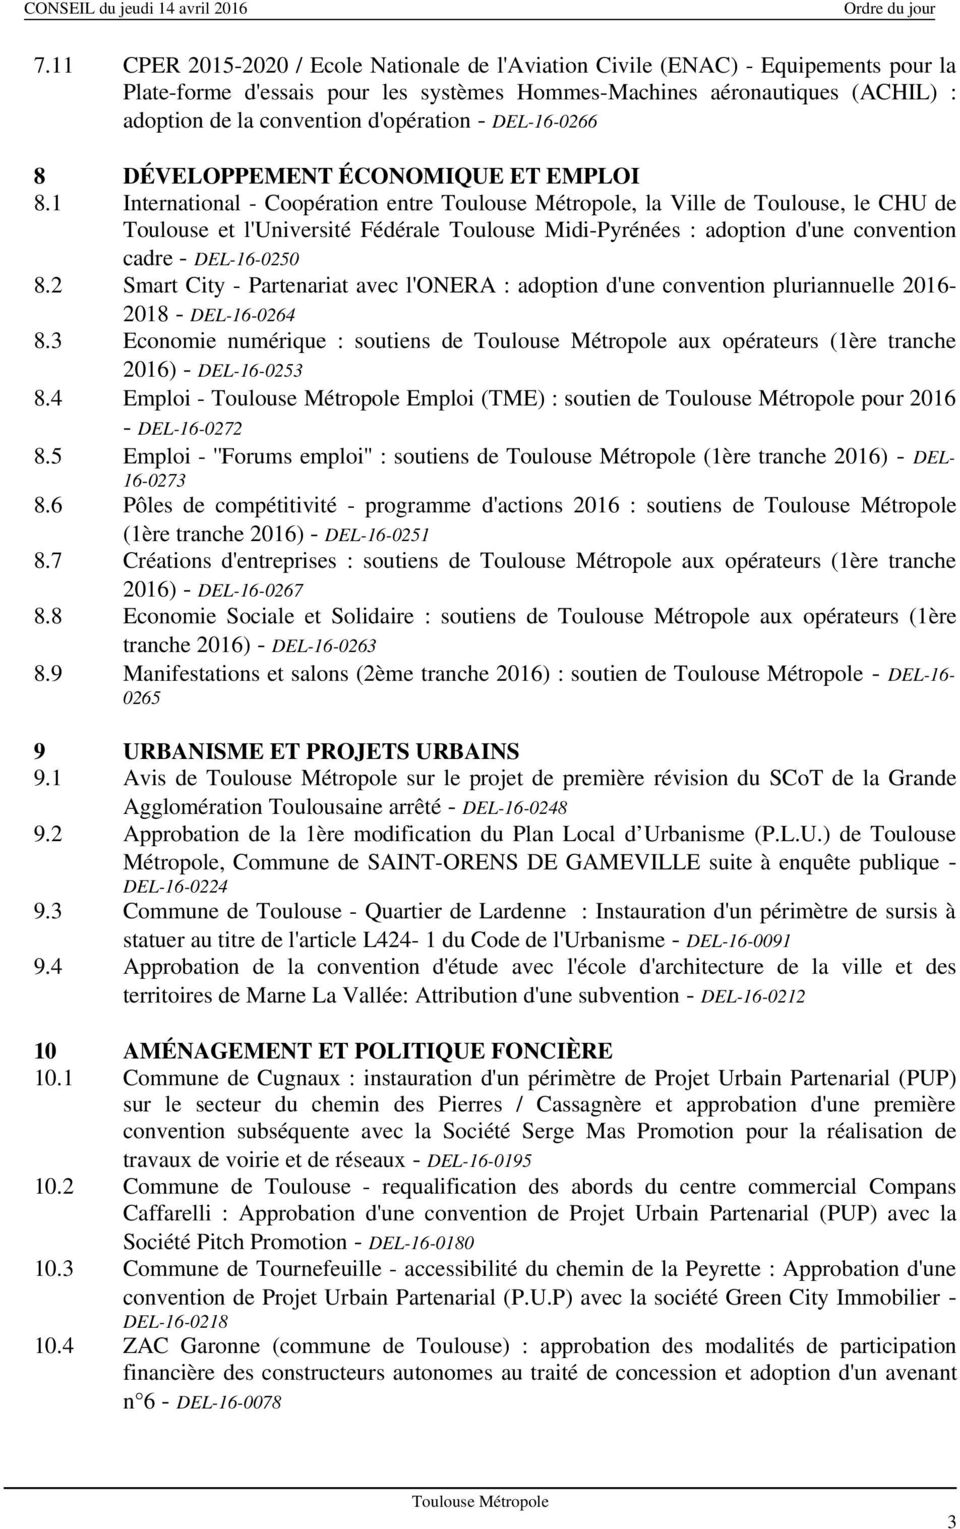 1 International - Coopération entre, la Ville de Toulouse, le CHU de Toulouse et l'université Fédérale Toulouse Midi-Pyrénées : adoption d'une convention cadre - DEL-16-0250 8.